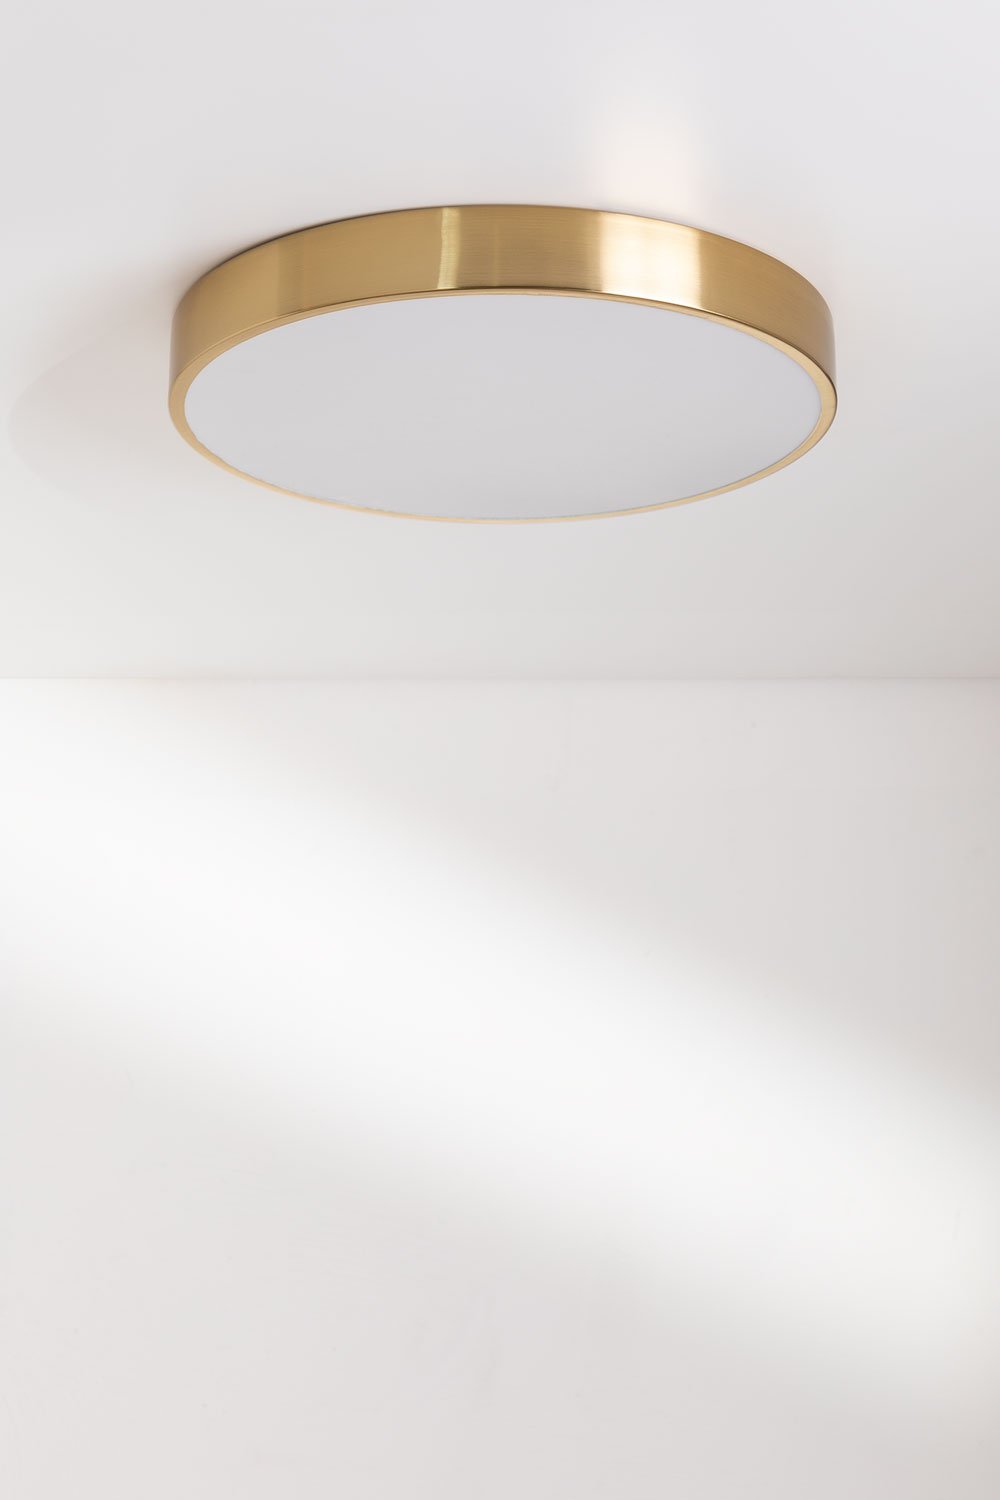 Plafonnier LED (Ø30 cm) Piercy, image de la galerie 1